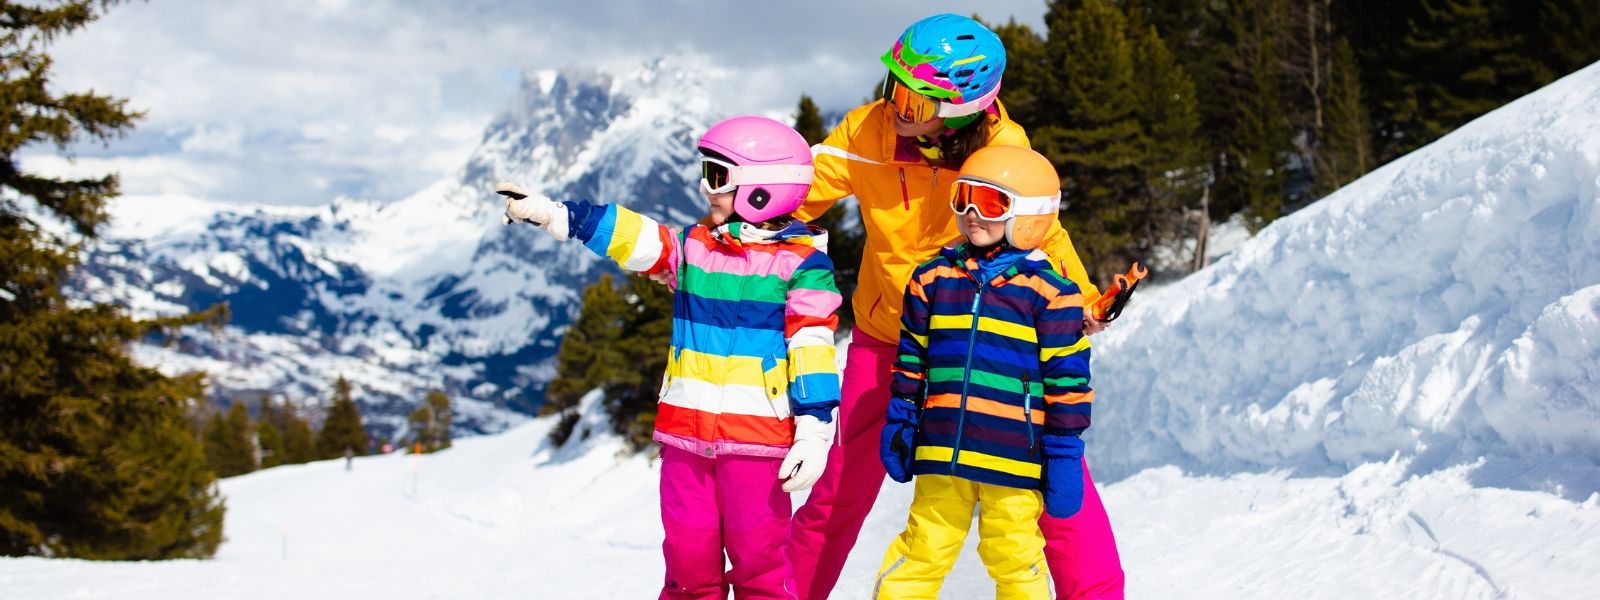 pojištění odpovědnosti se při lyžování s dětmi hodí